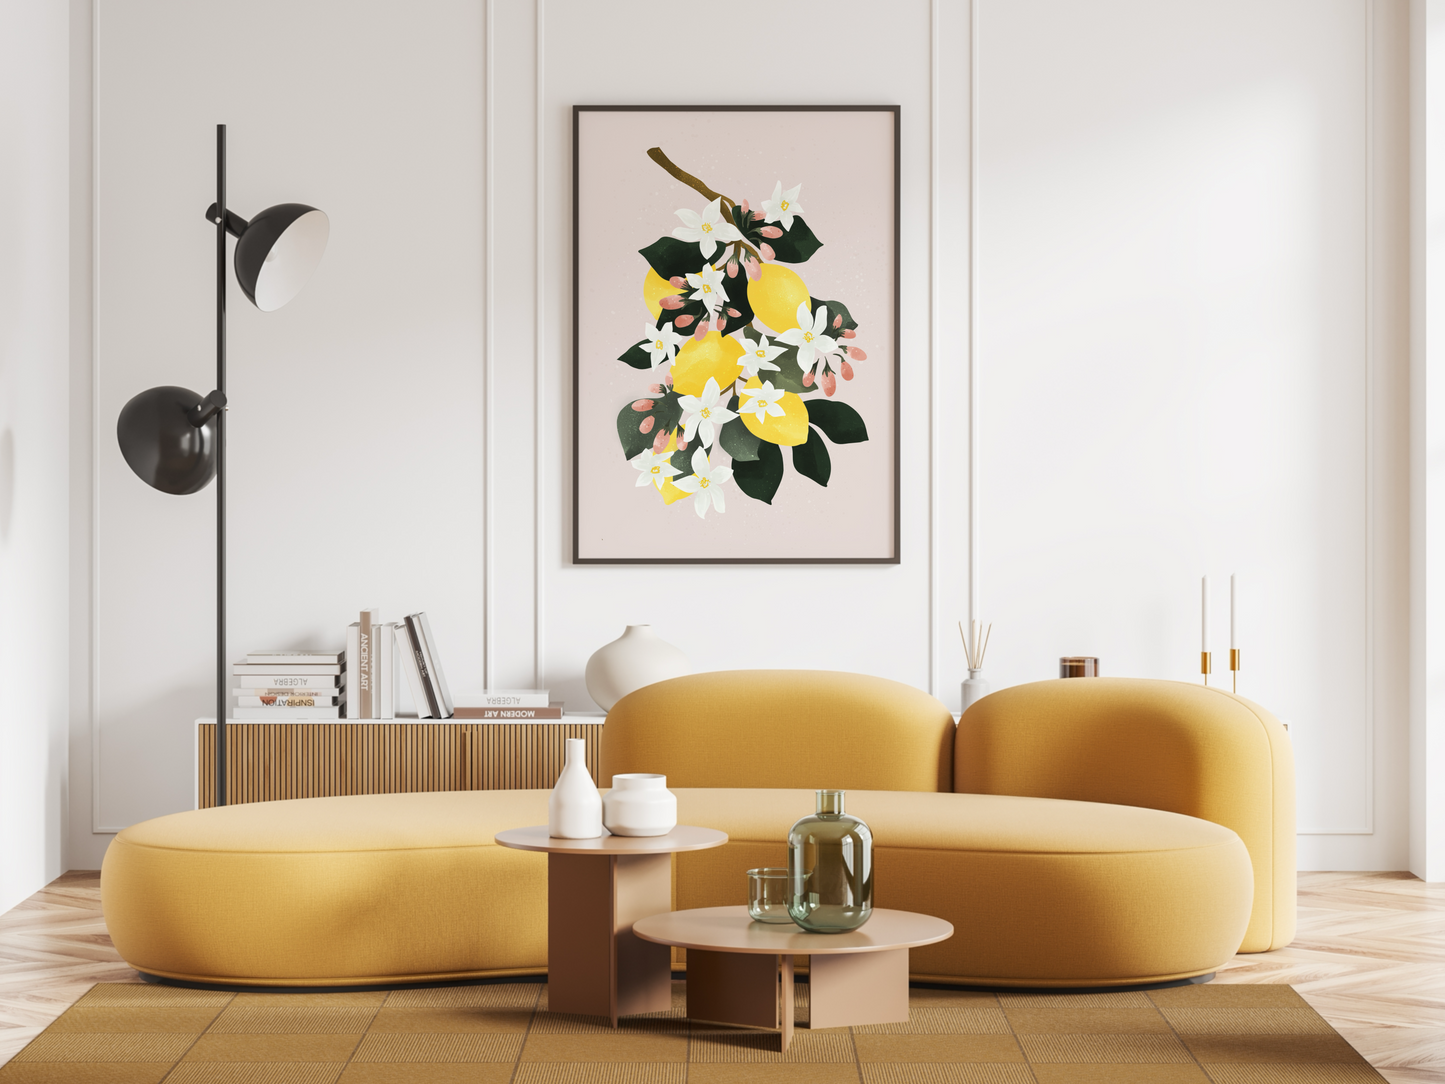 Förgyll ditt hem med en vacker citronposter!  Denna unika poster med citronmotiv ger en fräsch och elegant touch till vardagsrummet, sovrummet, kontoret eller var du än vill skapa en inbjudande atmosfär.. Design Tove Malm, Tove Malm Studio